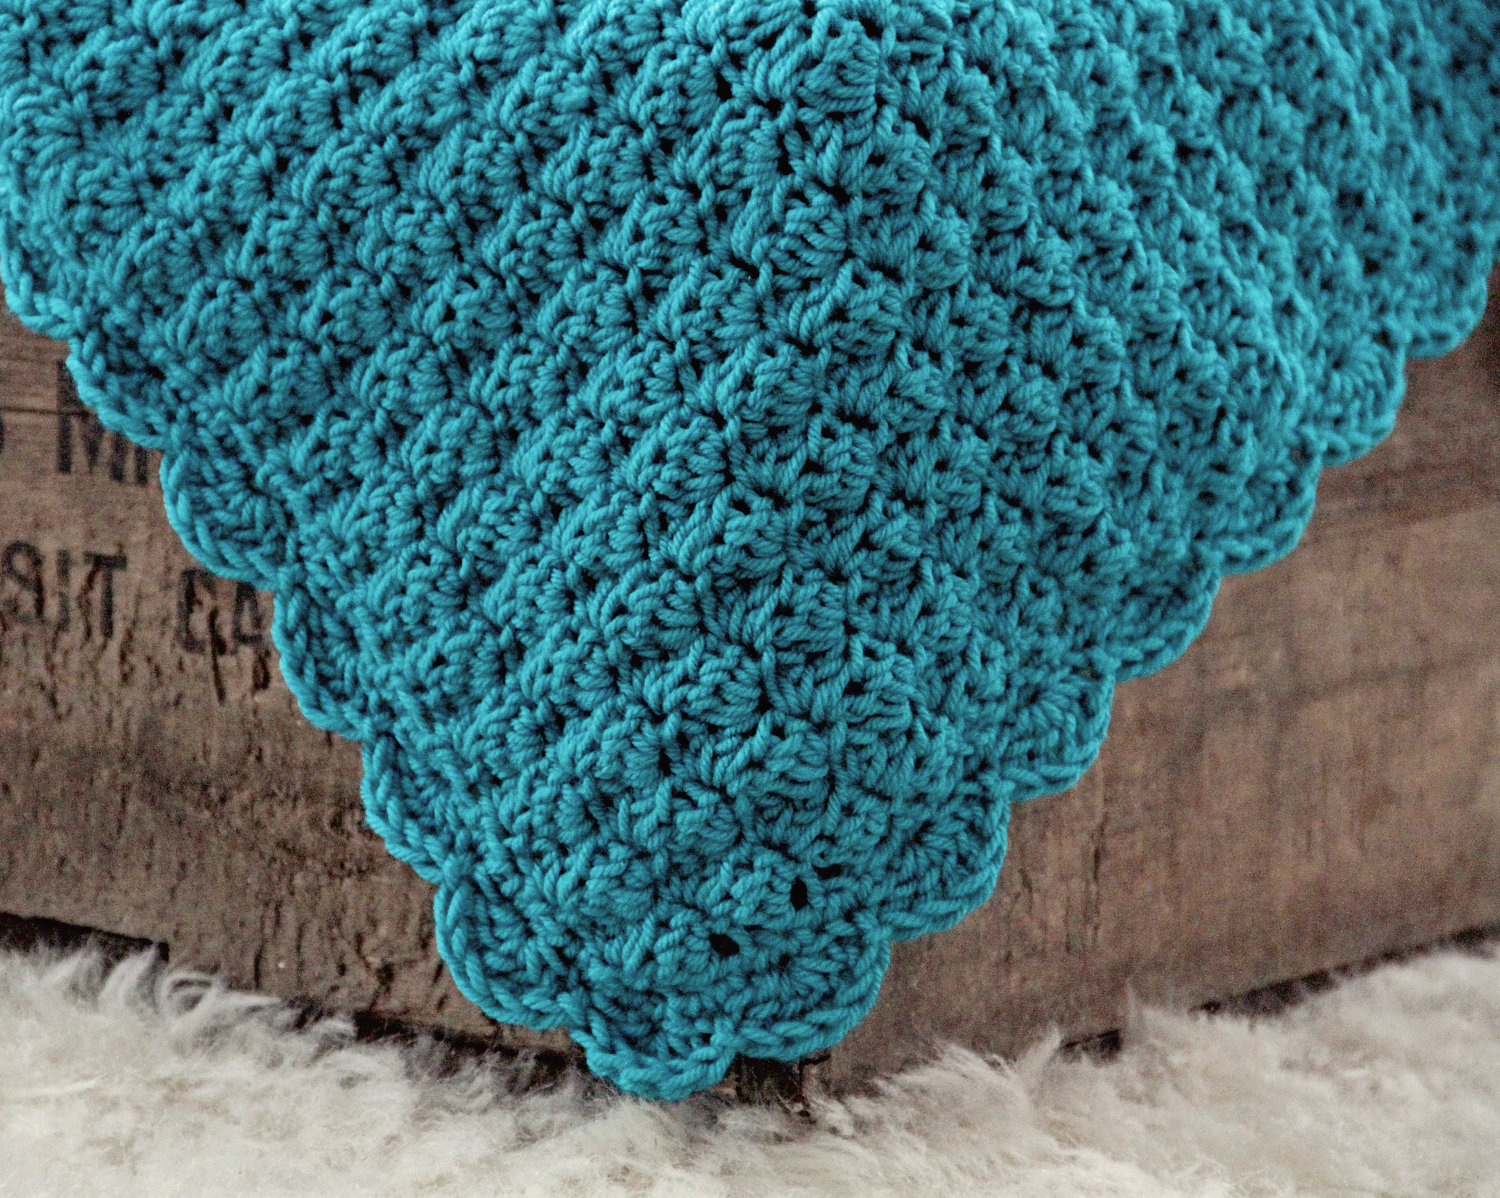 Begginer Crochet Blanket Free Pattern Cute Easy Crochet Blanket Patterns For Beginners Free Easy Crochet